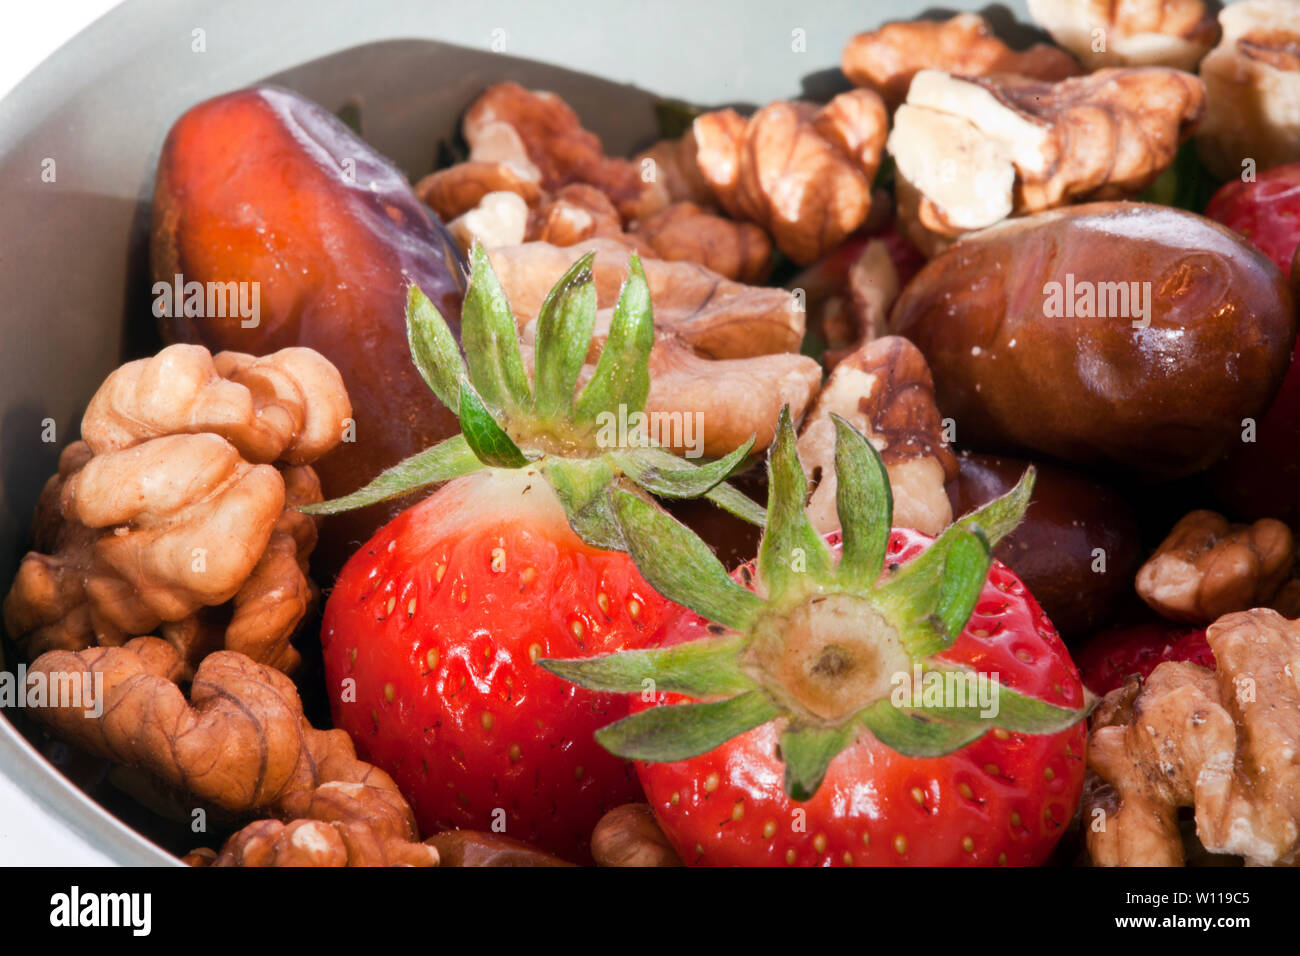 Obst und Kaffee in der Schüssel. Lebensmittel, die reich an Vitaminen Stockfoto